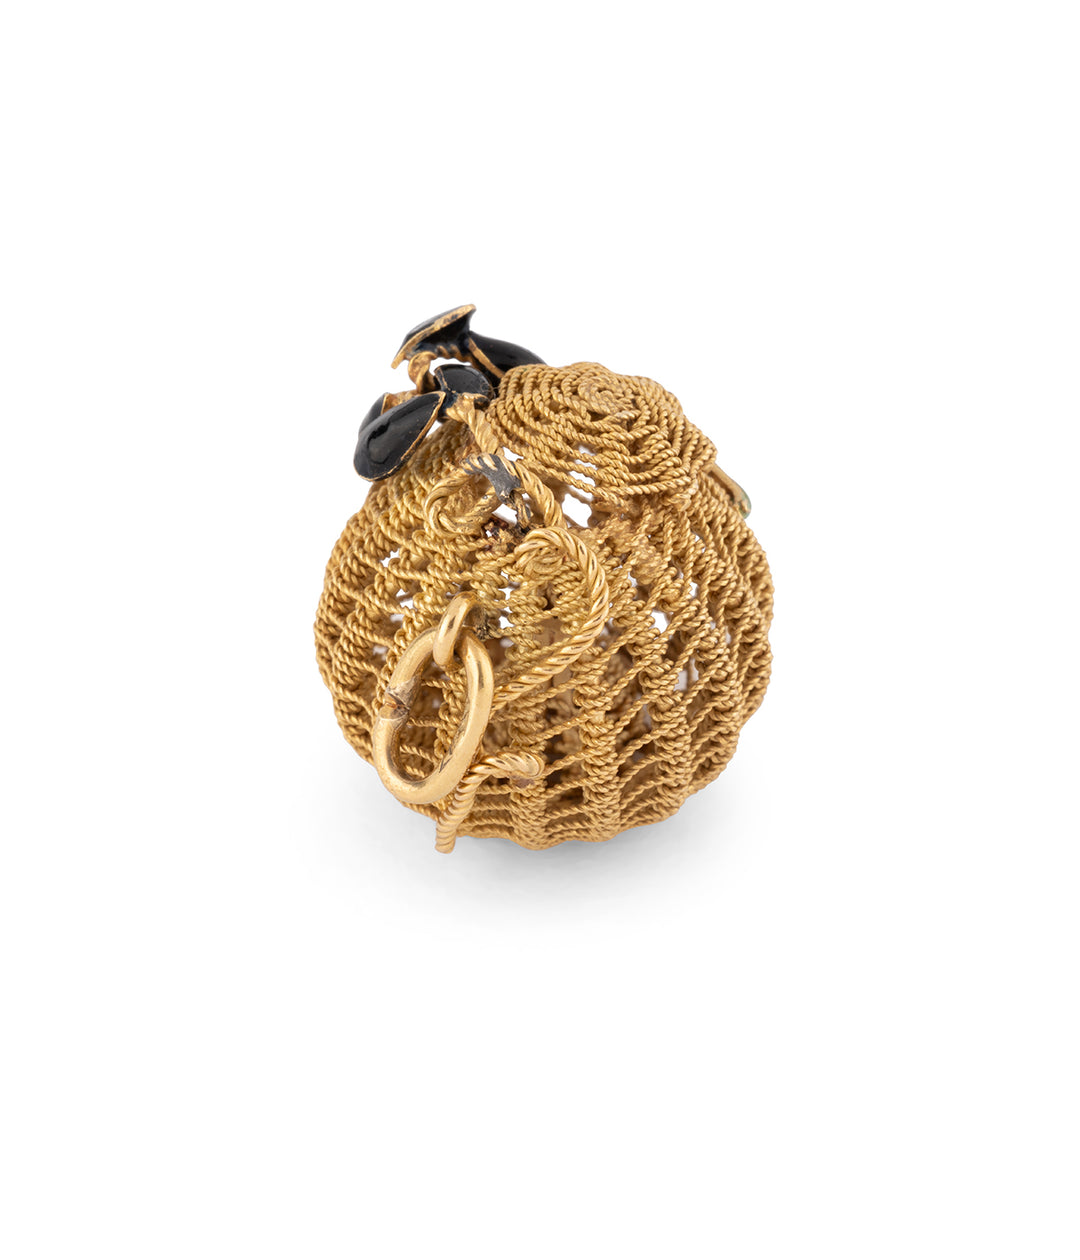 Gold enamel vintage pendant "Jady" - Caillou Paris